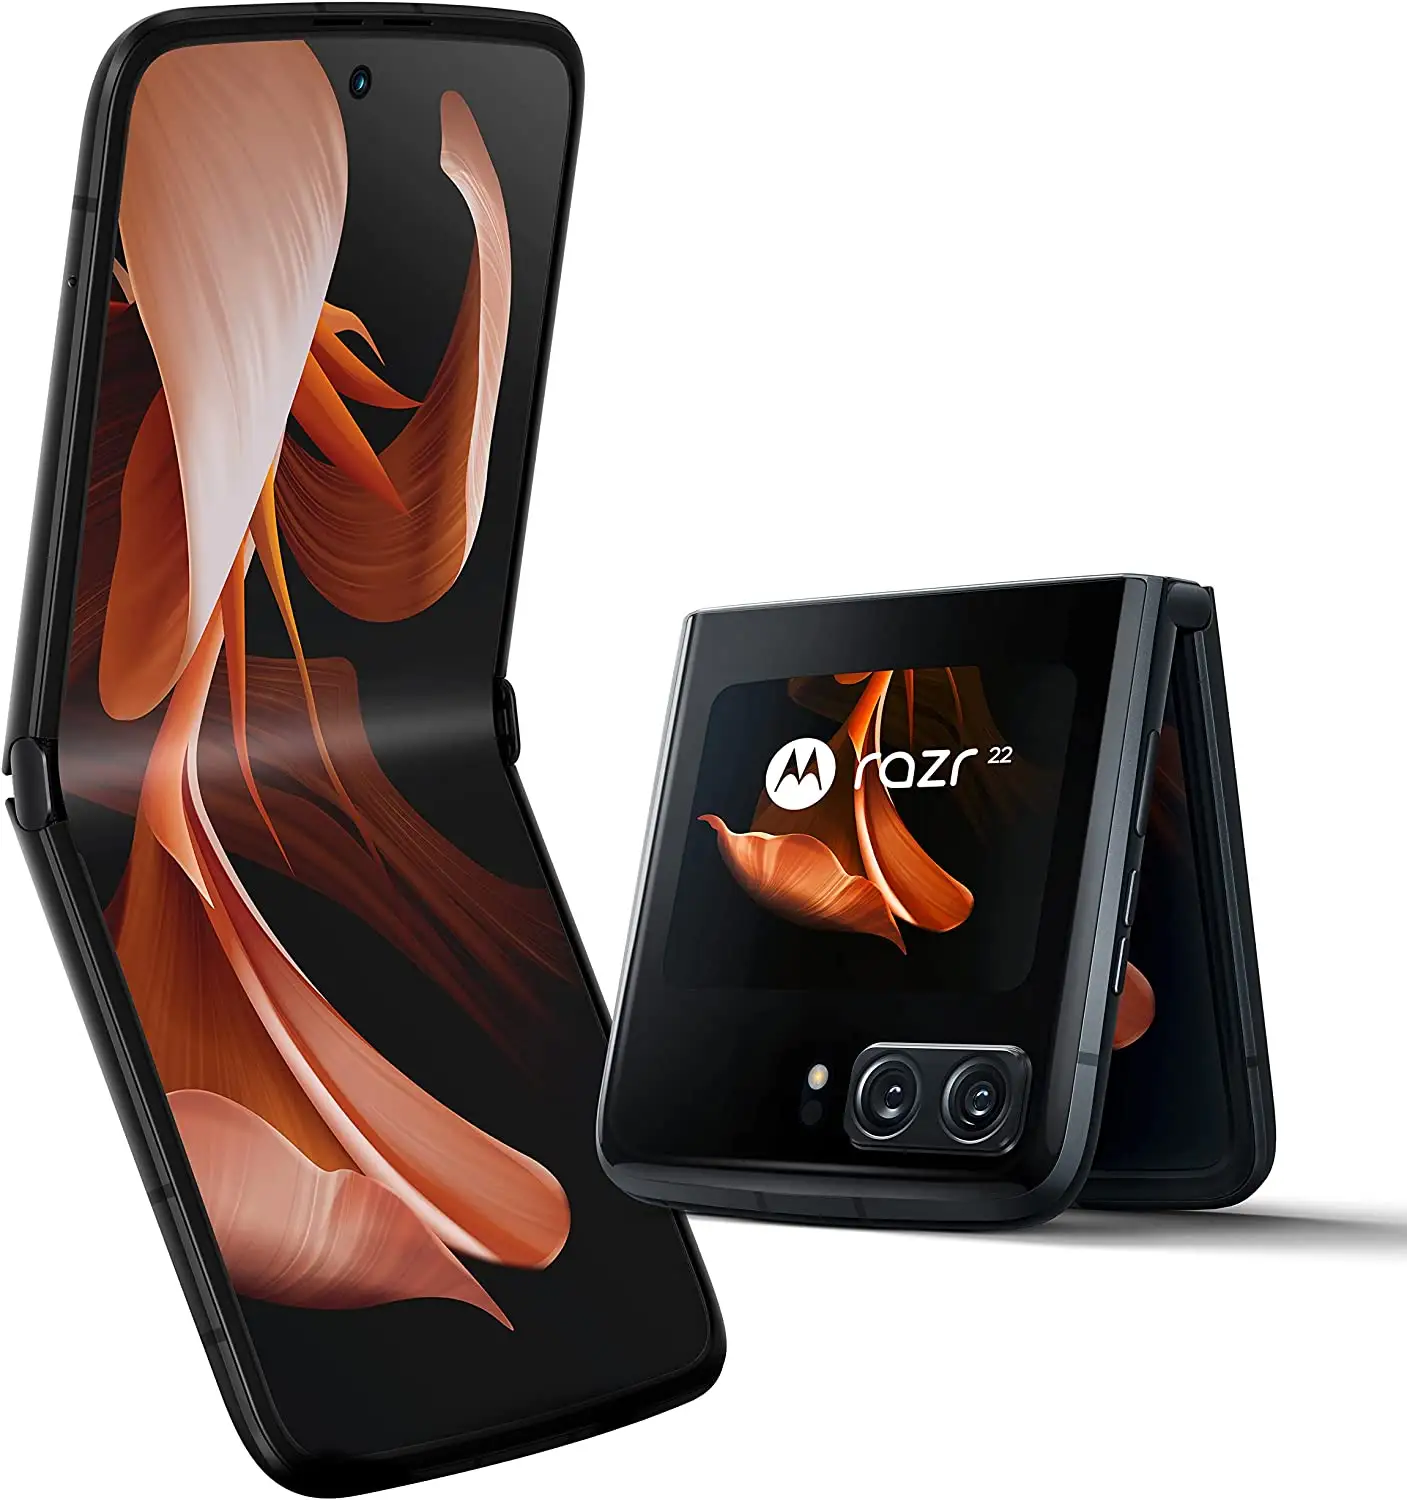 هاتف Motorola Razr 2022 الأصلي, هاتف محمول ، قابل للطي ، 8 + 128 جيجا بايت ، غير مقفل ، 5G ، هاتف ذكي مستخدم ، أفضل الأسعار